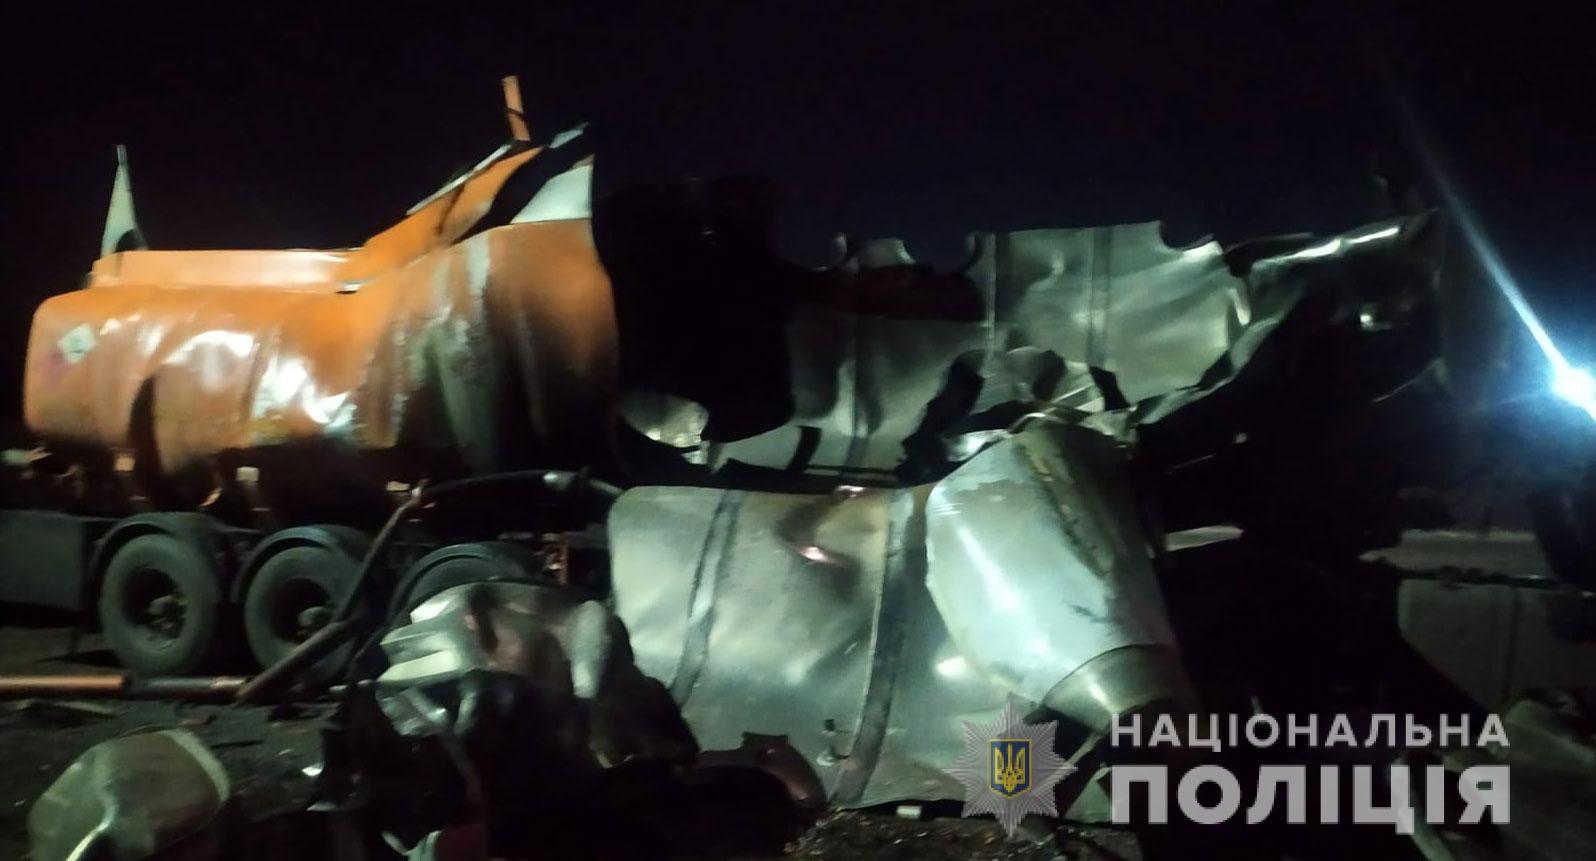 В Полтавской области взорвался бензовоз. В результате происшествия погиб 47-летний водитель. Об этом сообщает пресс-служба областной полиции